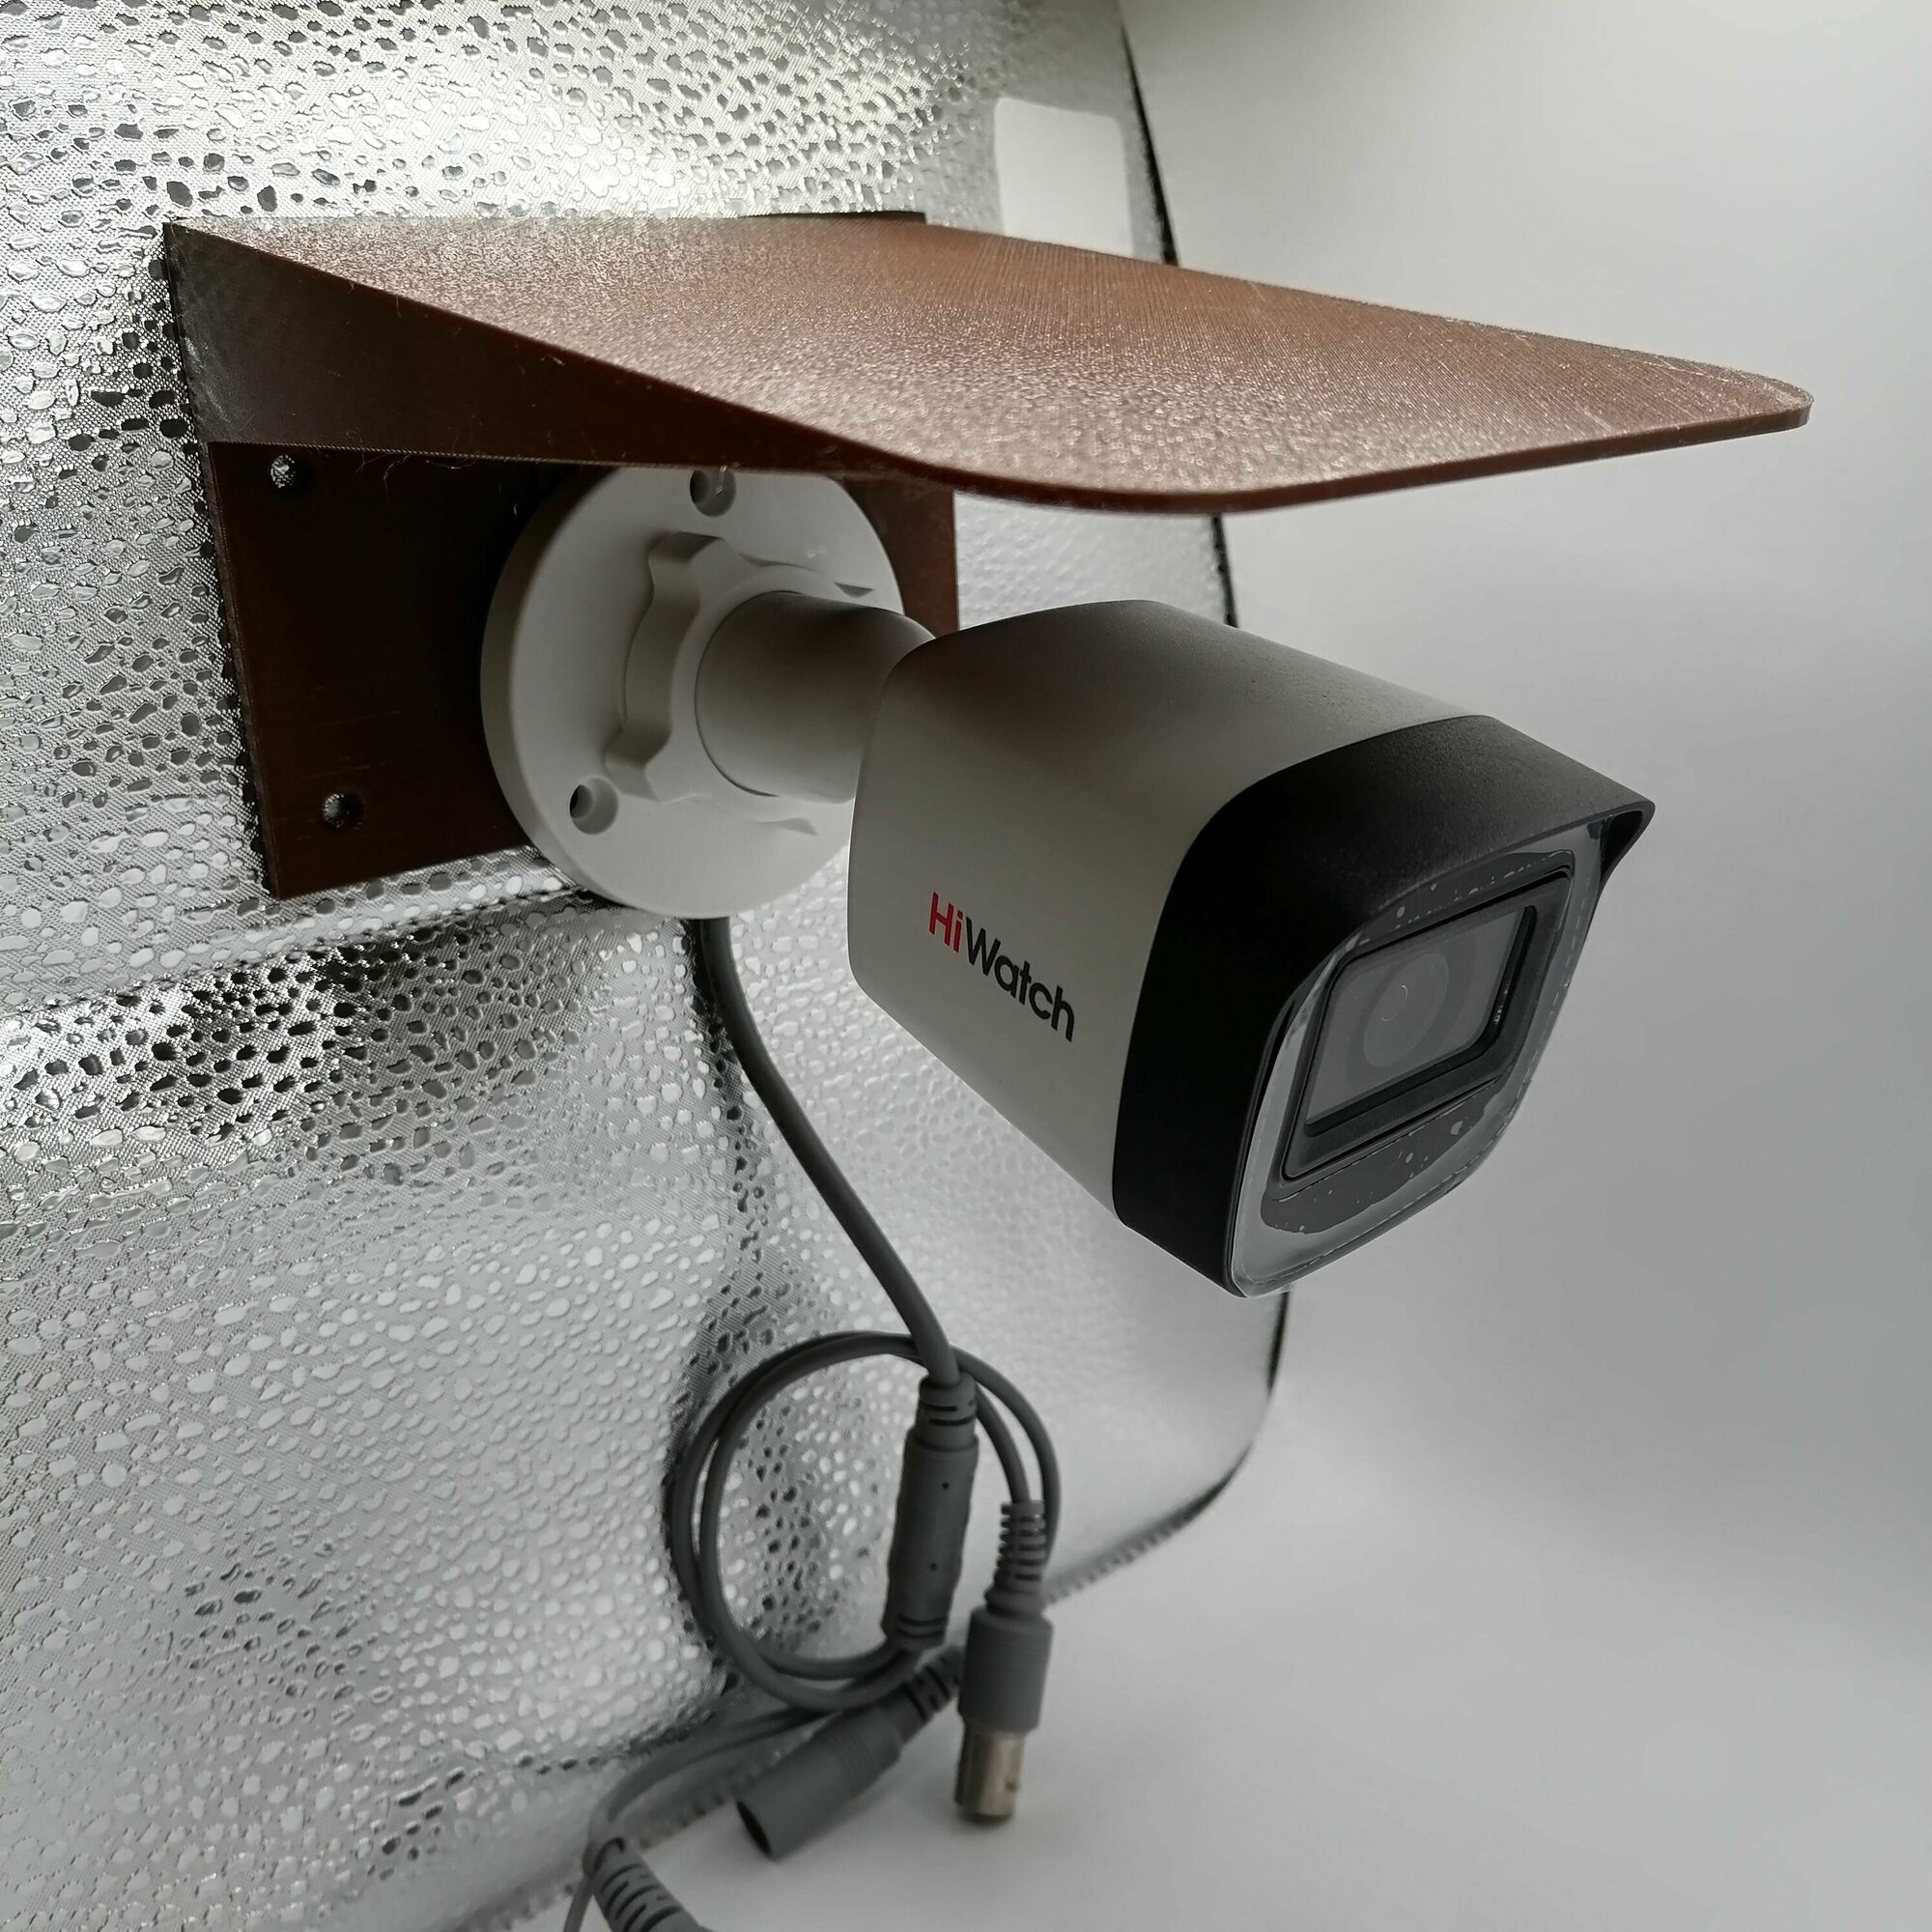 Защитный козырек для камеры 3D-печать (светильника) видеонаблюдения HIKVISION HIWATCH DAHUA плоский (коричневый) защита камеры от дождя, льда, снега